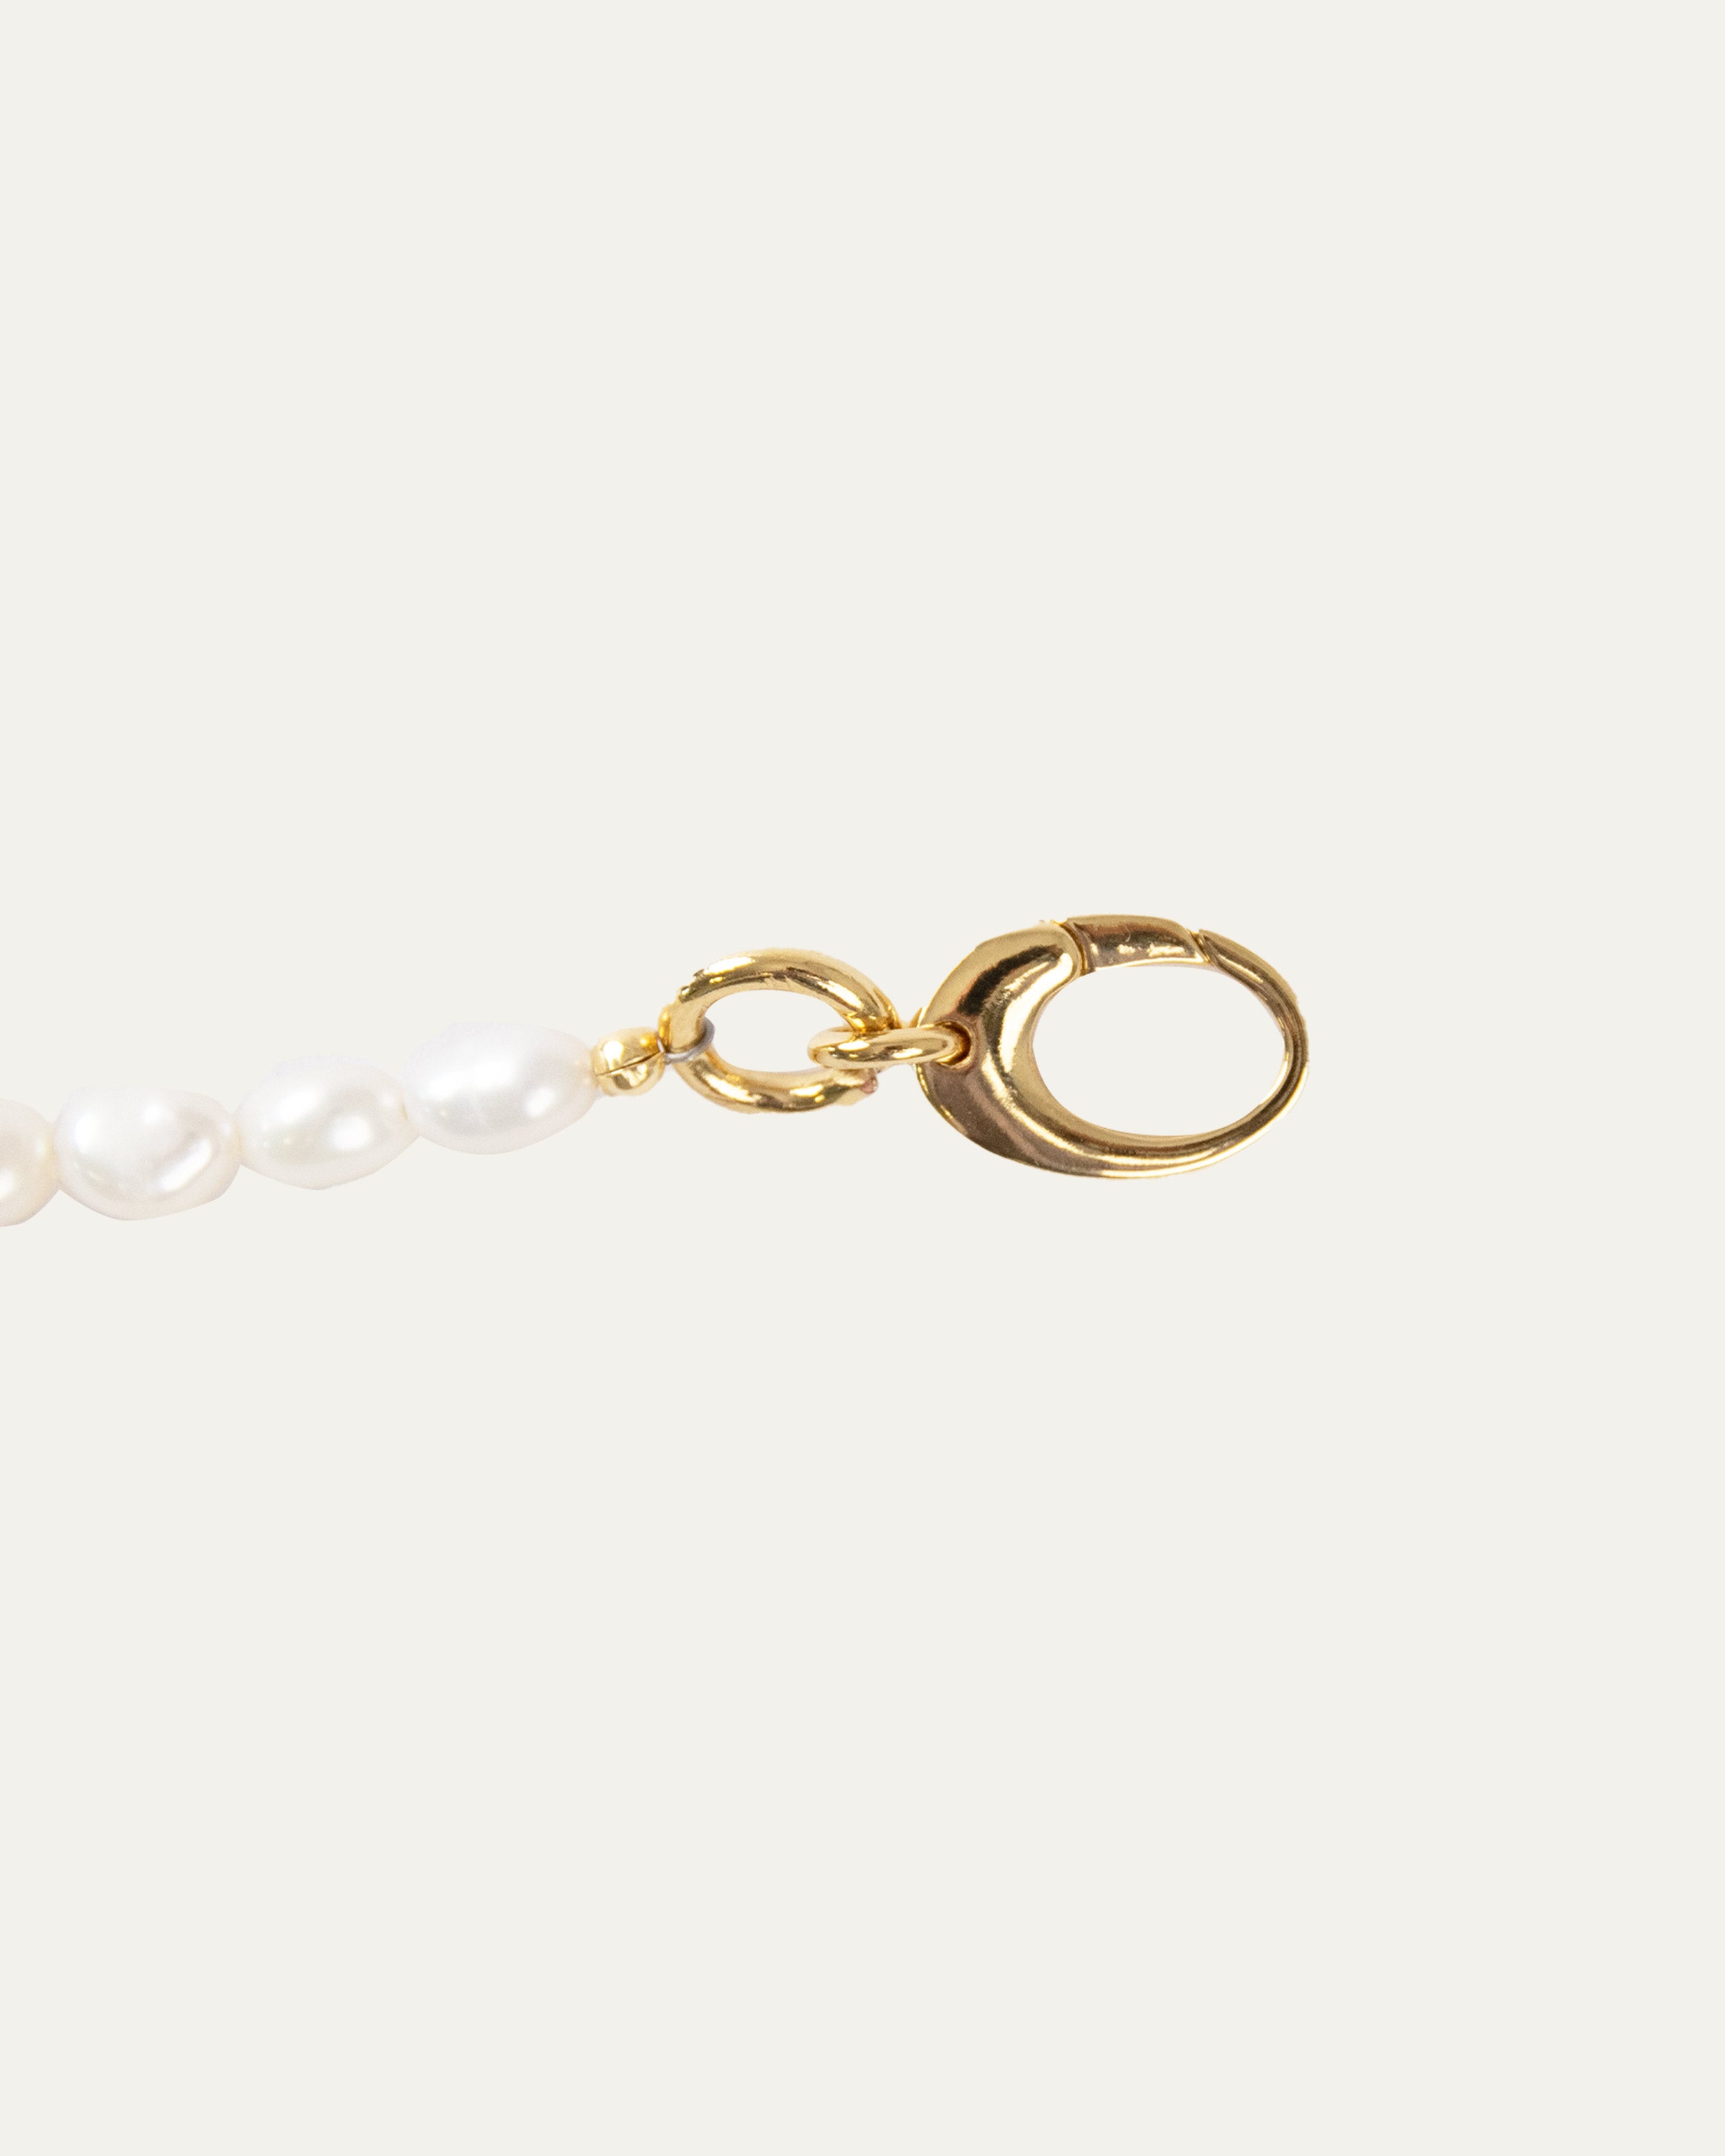 Bracelet orné de perles de culture ovale avec un fermoir en crochet, en plaqué or 3 microns 18 carats made in France.